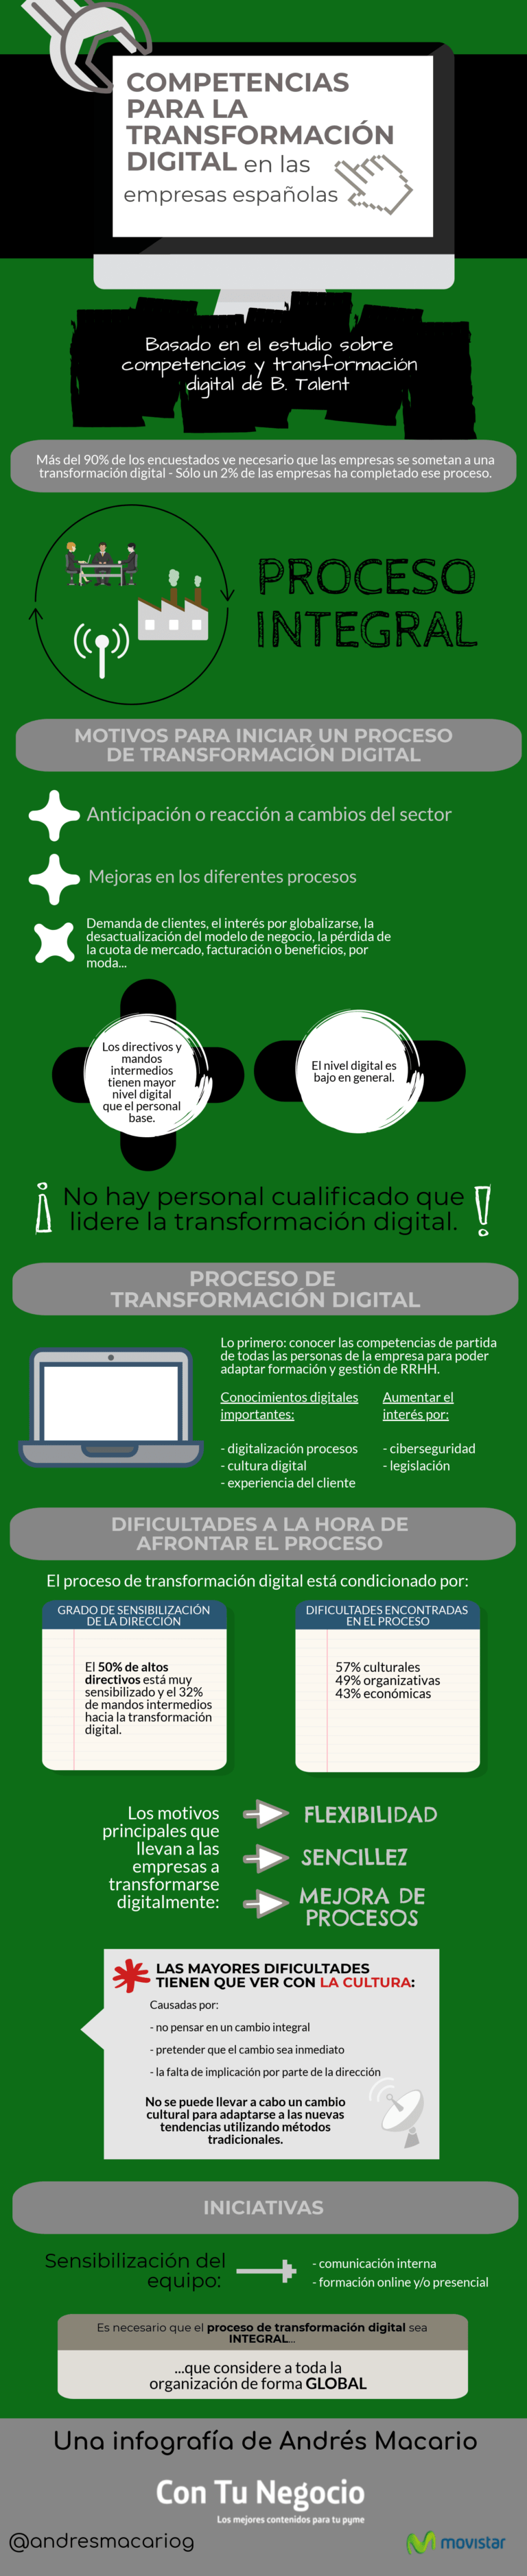 Infografia - Competencias profesionales para la transformación digital #infografía @andresmacariog - TICs y Formación